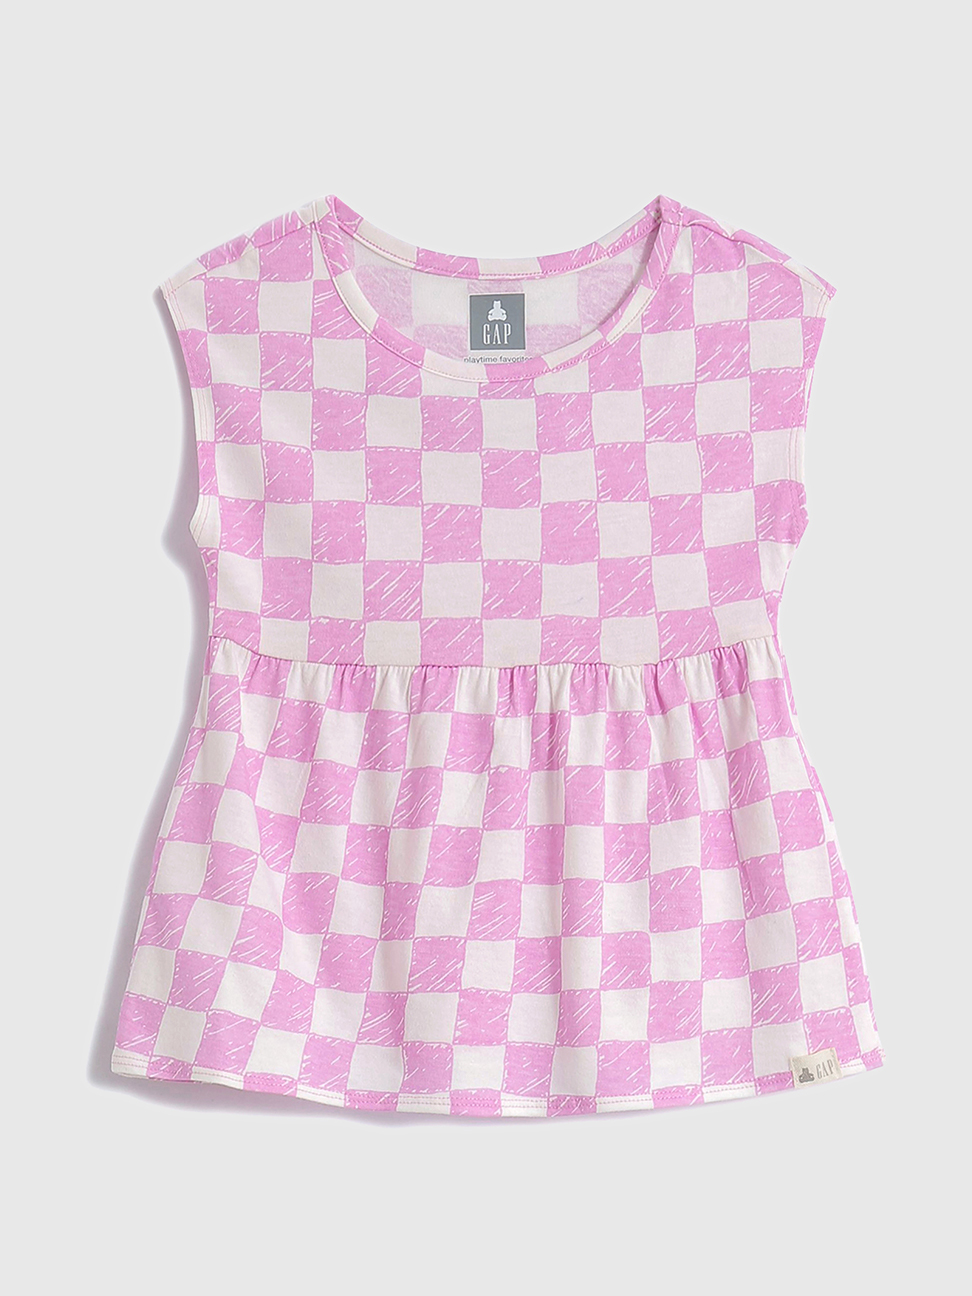 女幼童|活力印花褶皺圓領無袖T恤 布萊納系列-紫色棋盤格